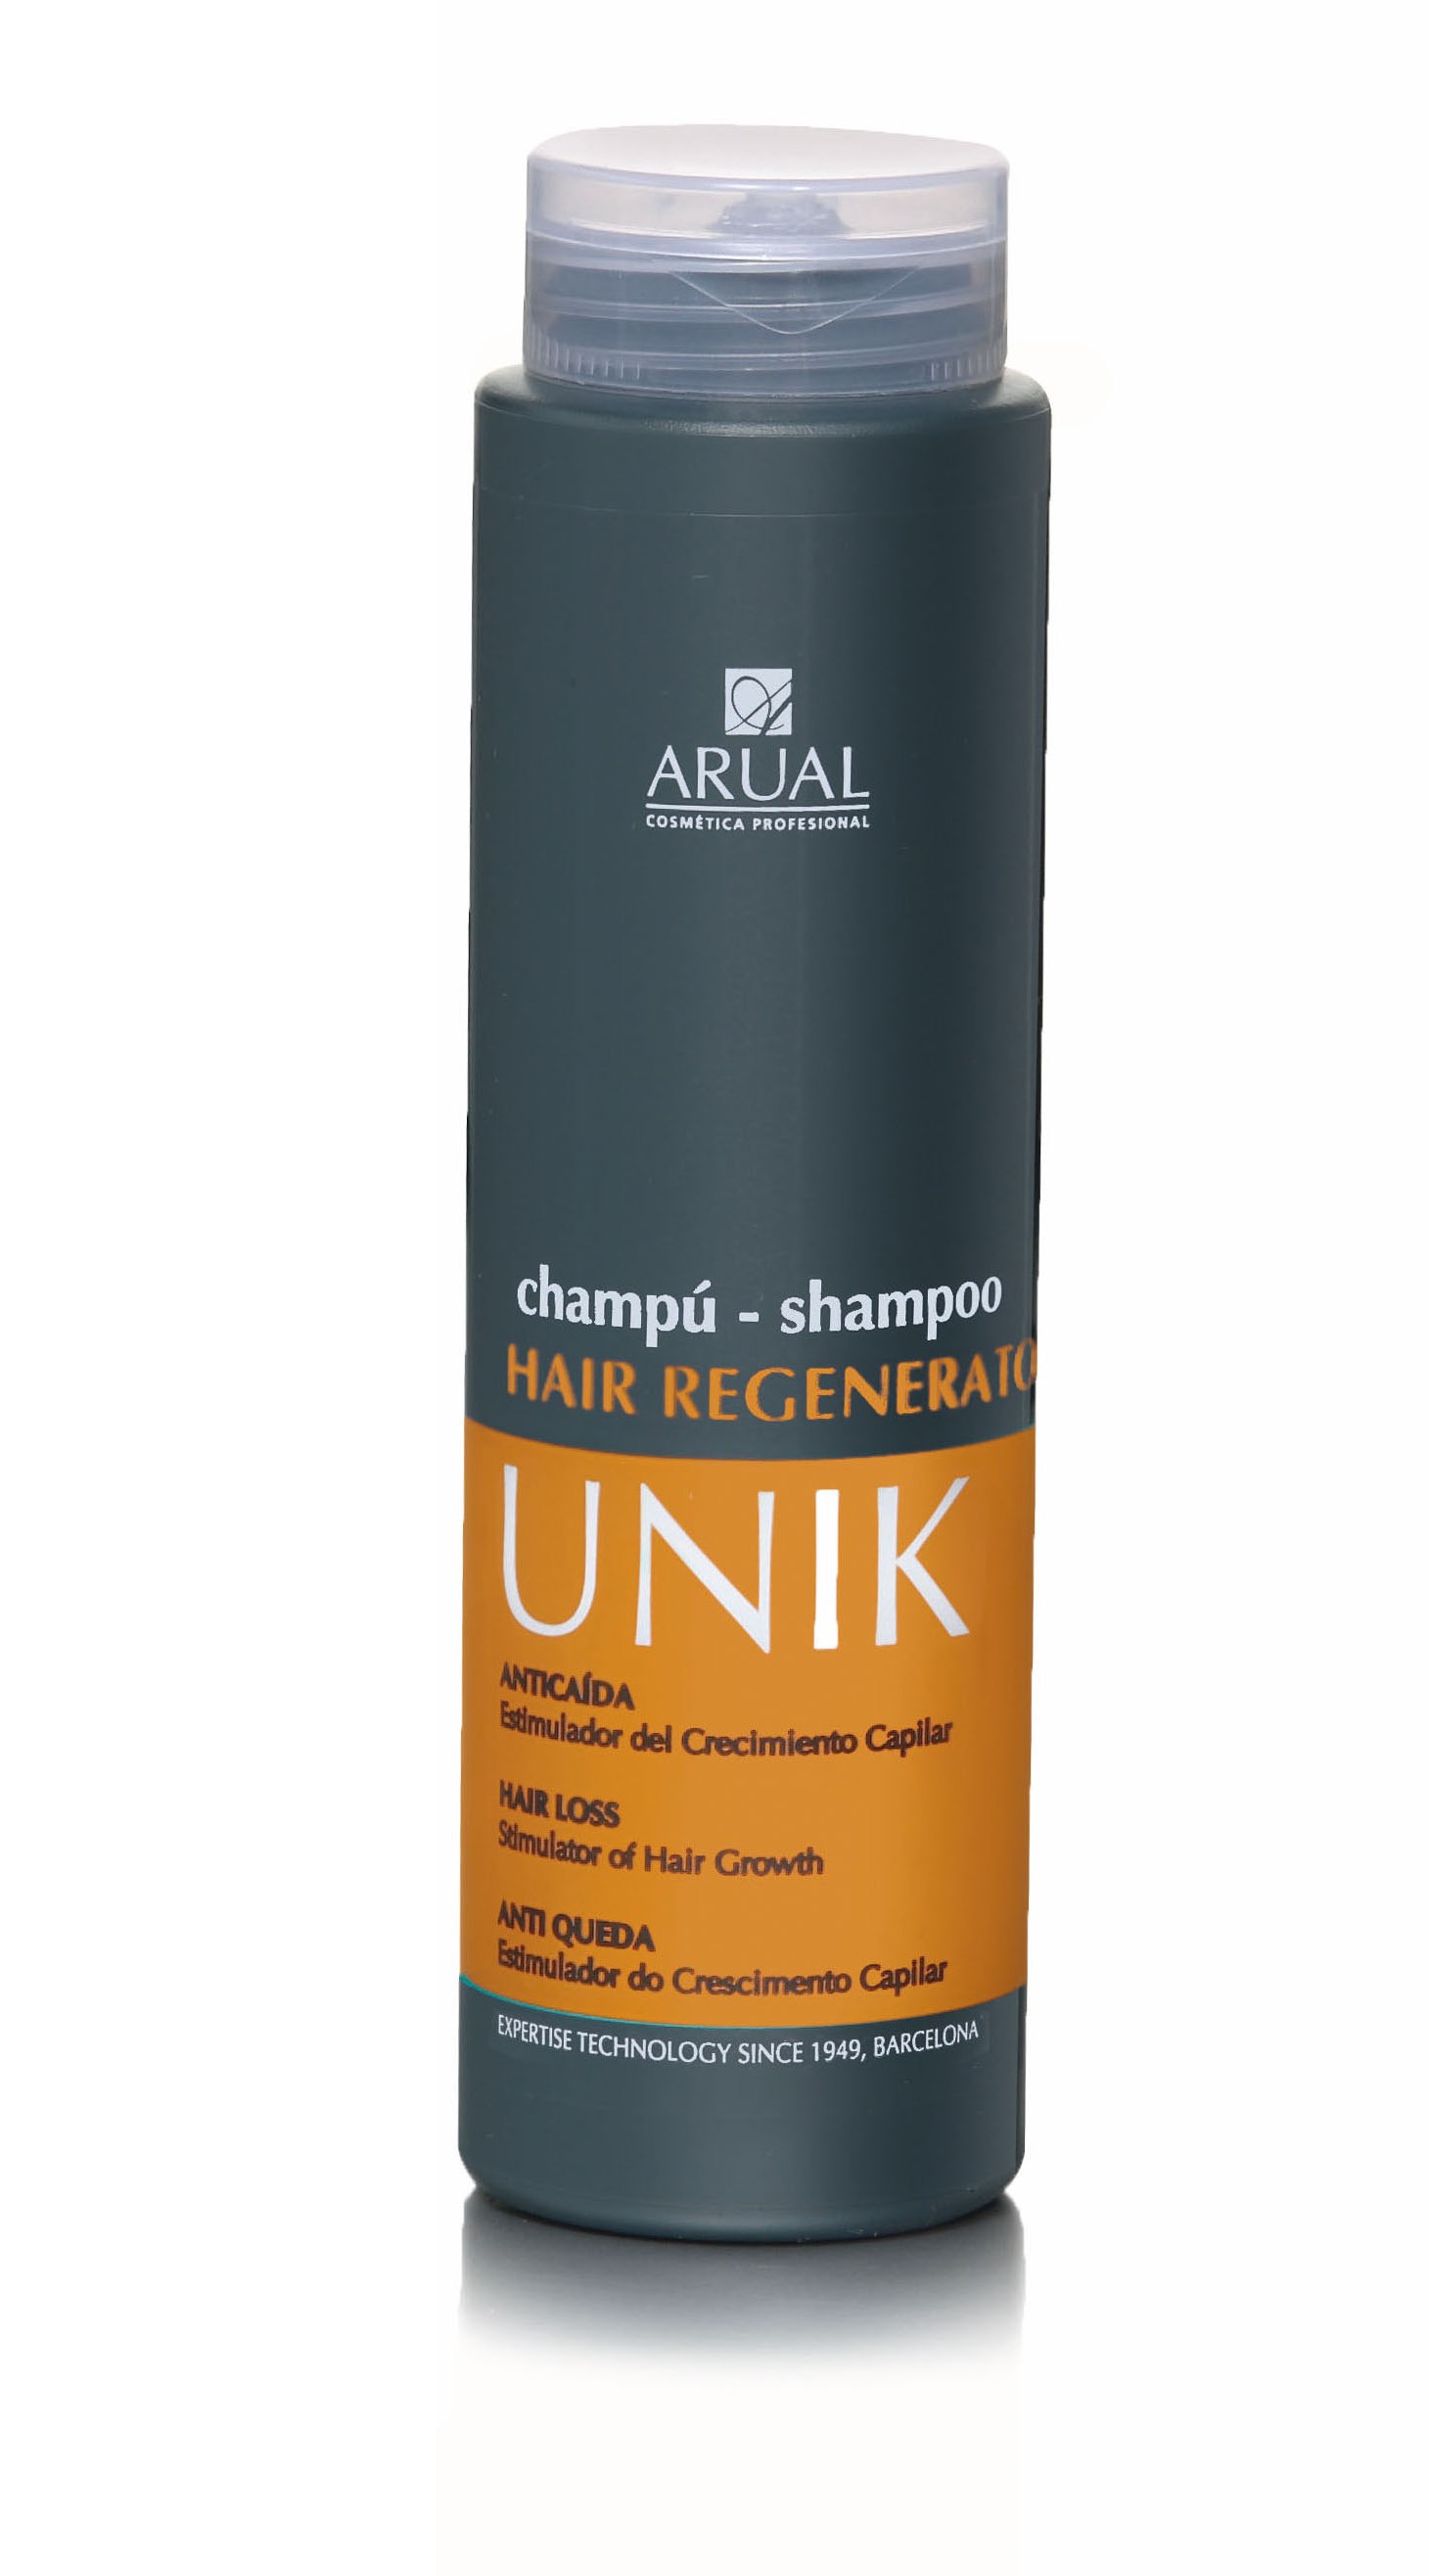 ARUAL CHAMPU UNIK HAIR REGENERATOR 250 ML